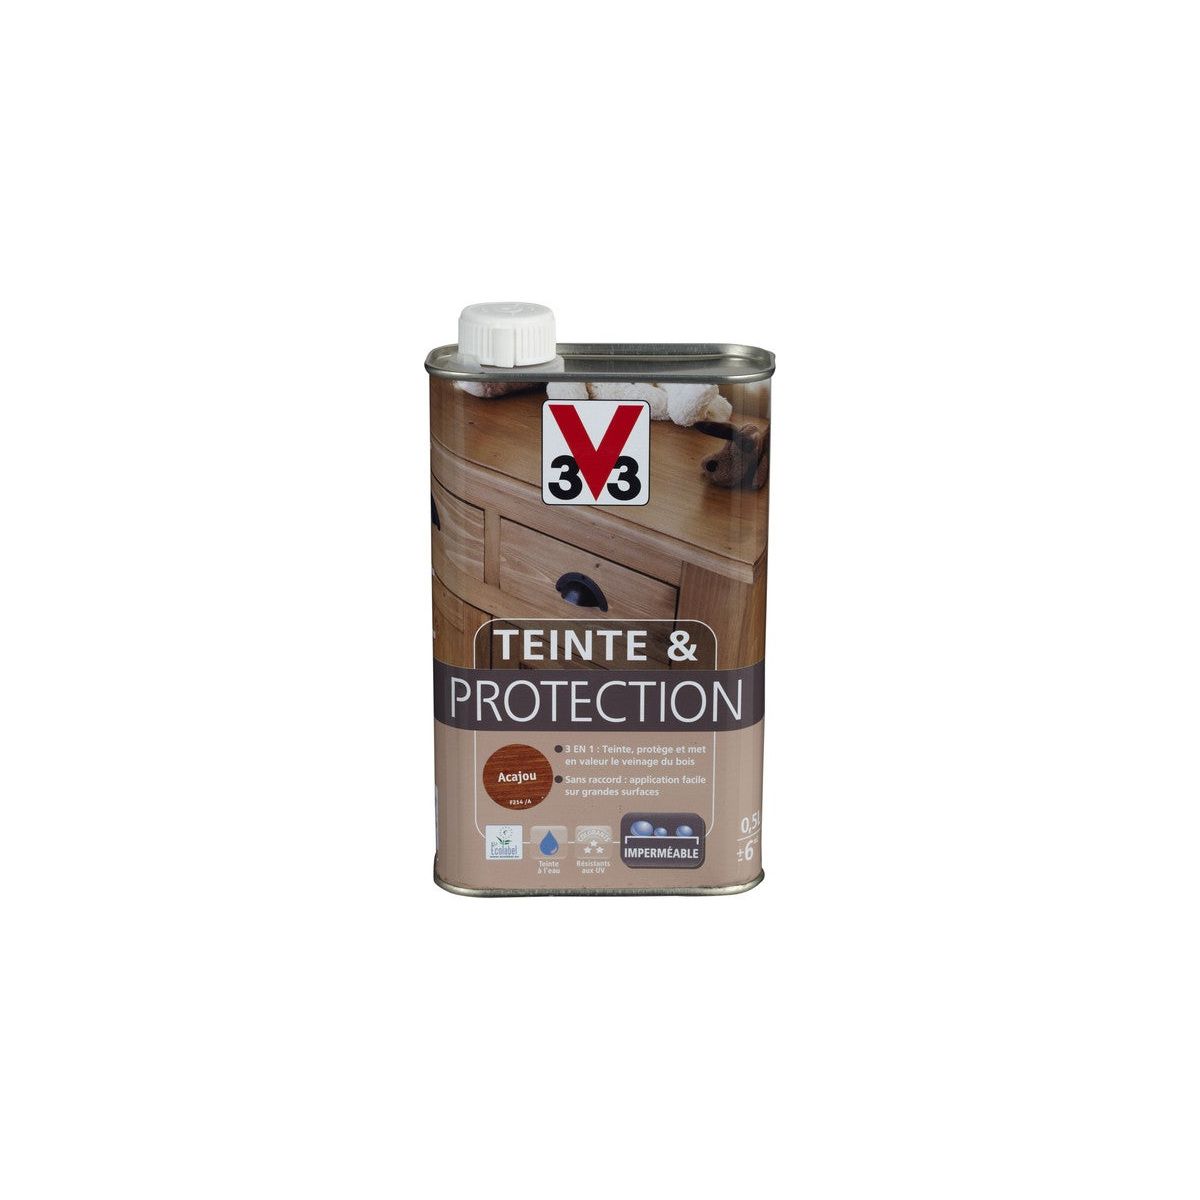 Meuble & Boiserie Intérieur - Teinte & Protection V33 - Mobilier, Porte ou  fenêtre